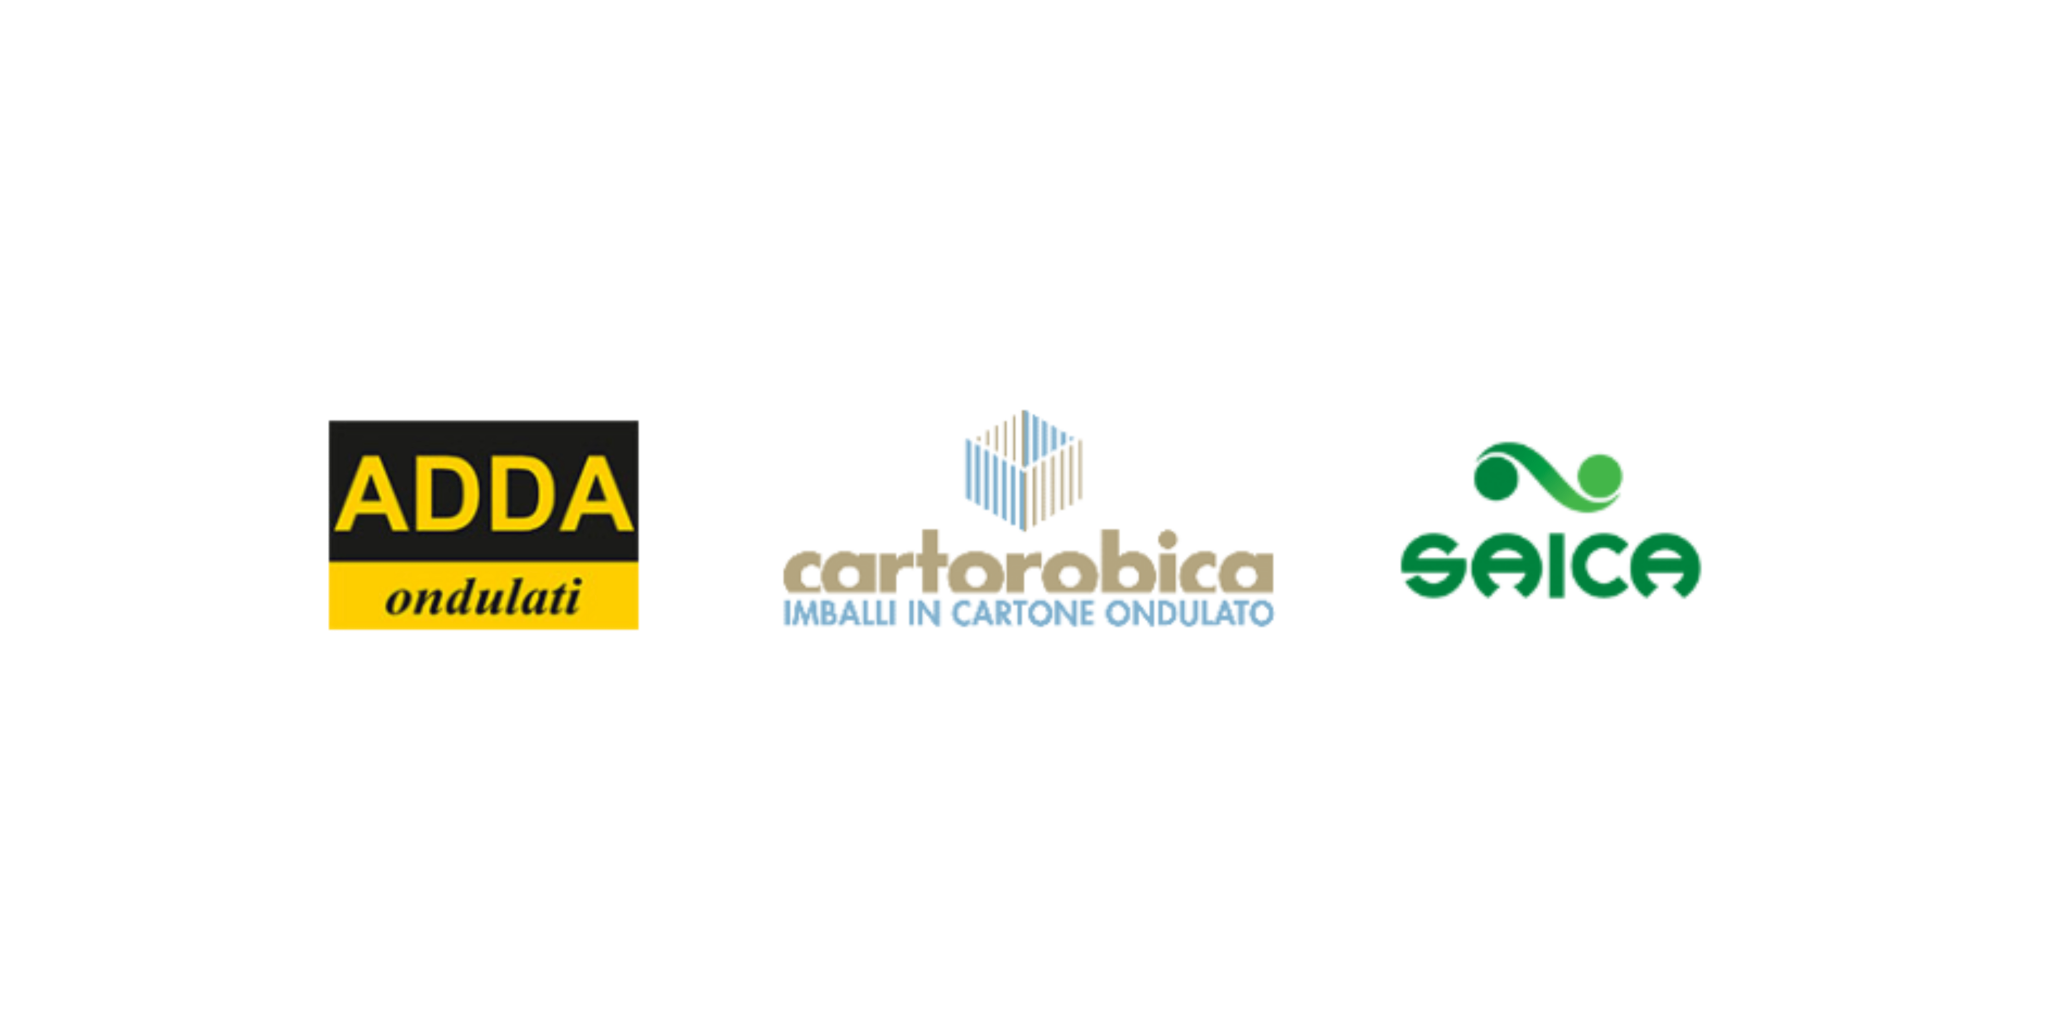 Strategic accanto ad Adda Ondulati e Cartorobica per tutti gli aspetti strategici dell'accordo con Saica Group